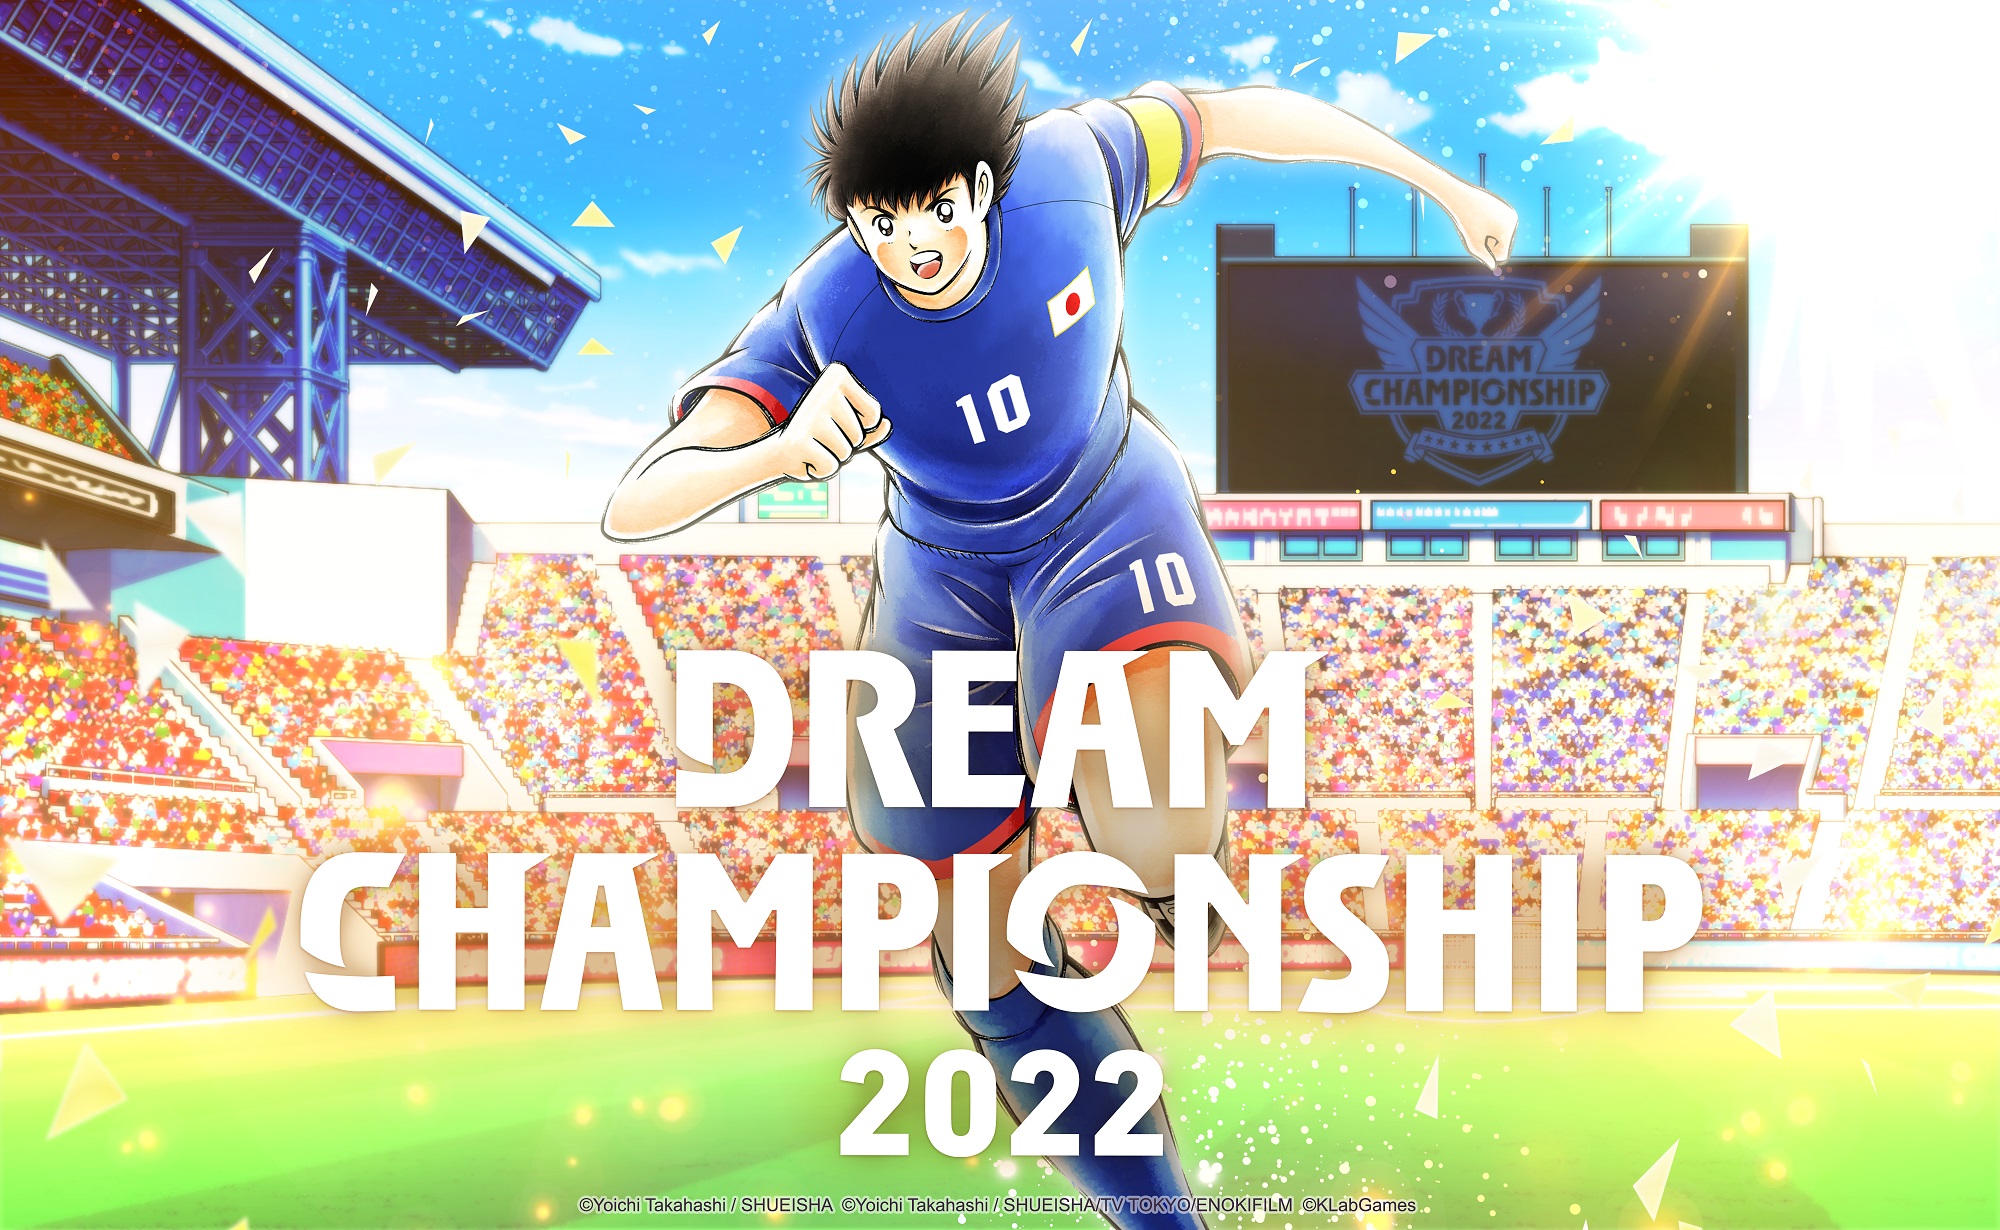 انطلاق تصفيات الانترنت لبطولة Dream Championship 2022 العالمية للعبة Captain Tsubasa: Dream Team الجمعة 9 سبتمبر! 